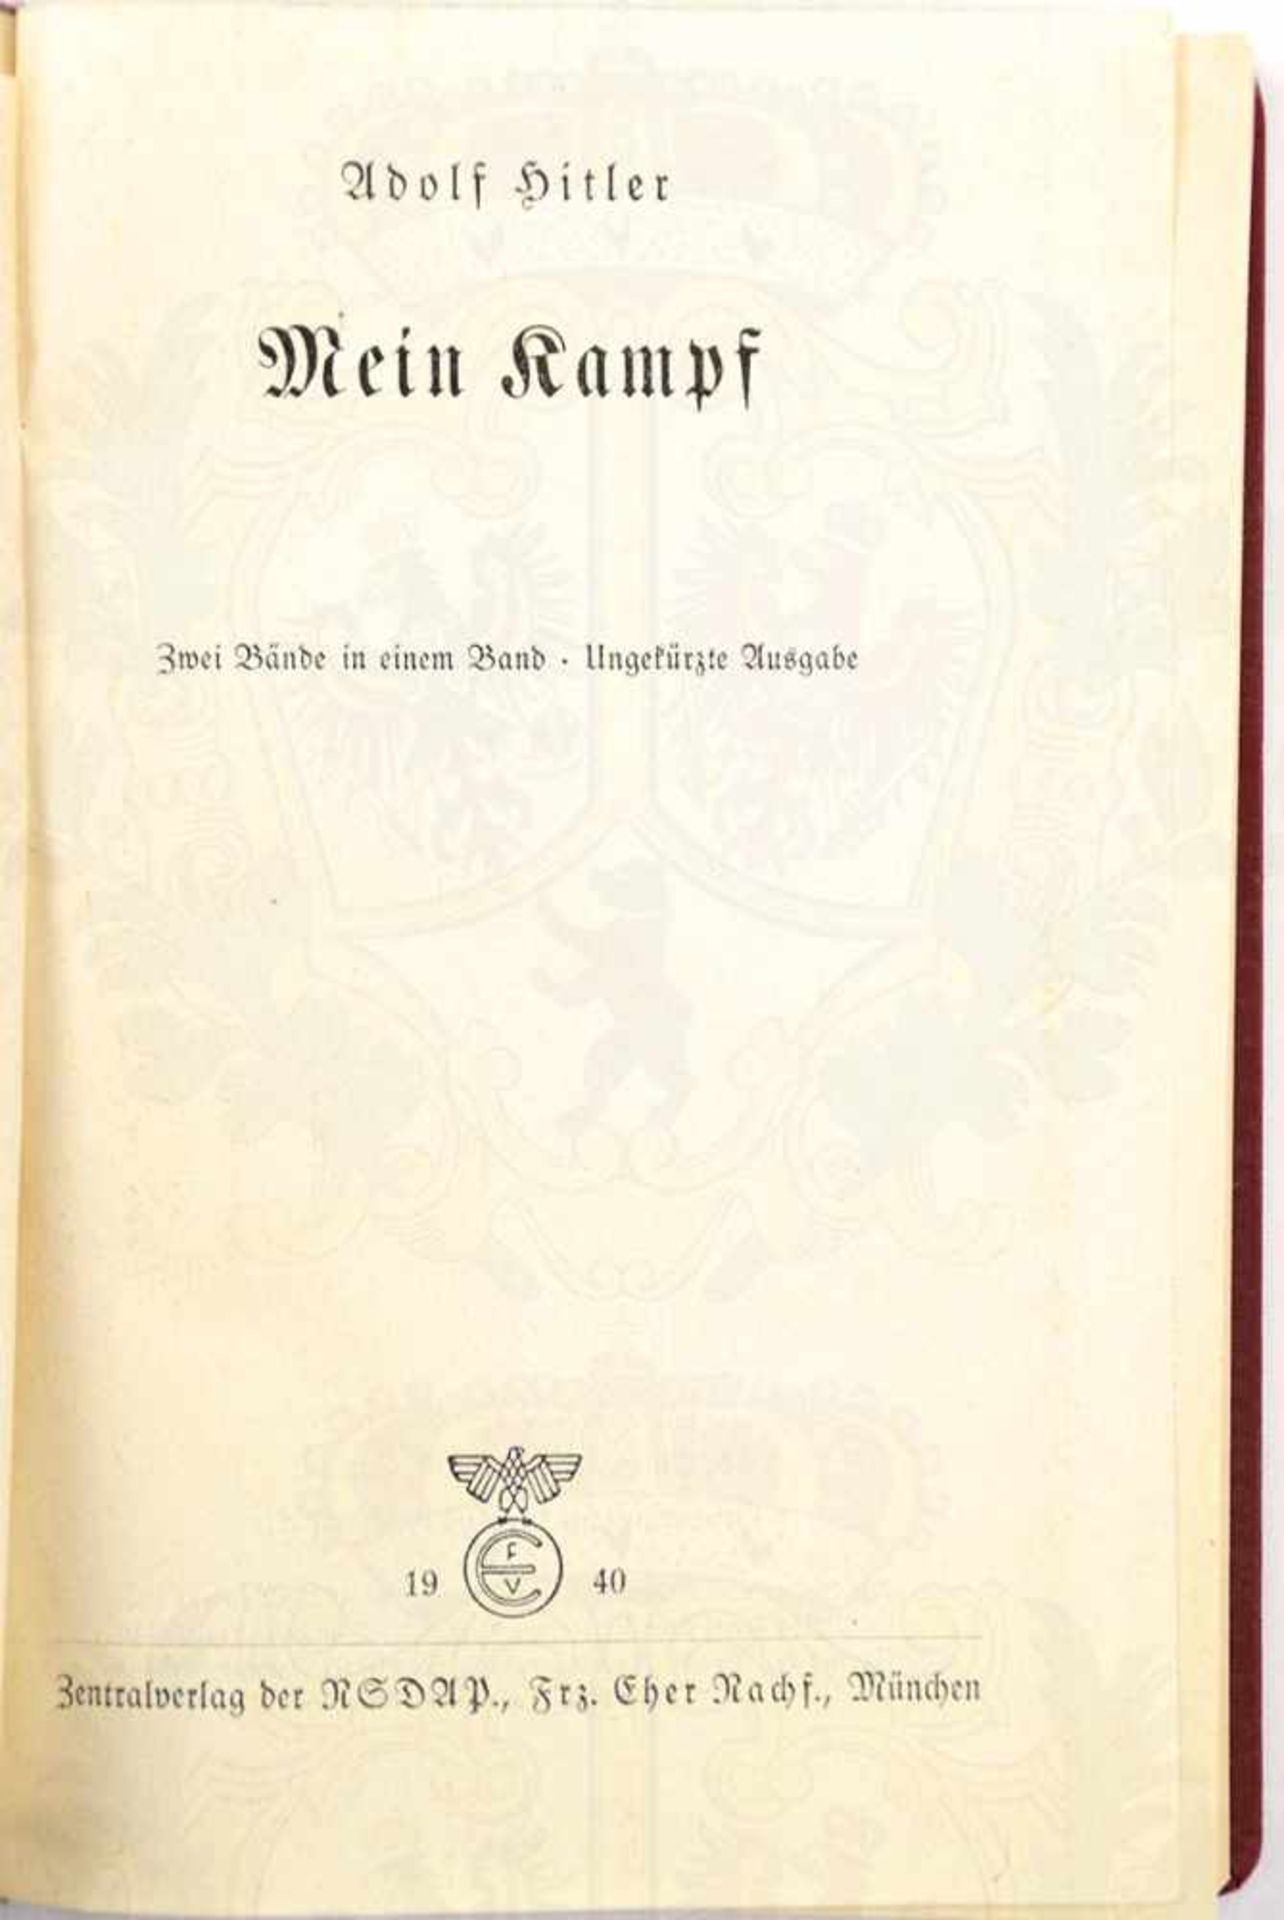 MEIN KAMPF, Dünndruckausgabe, Adolf Hitler, 5. Aufl., Eher-Verlag, München 1940, 781 S., 1 Portrait, - Bild 3 aus 3